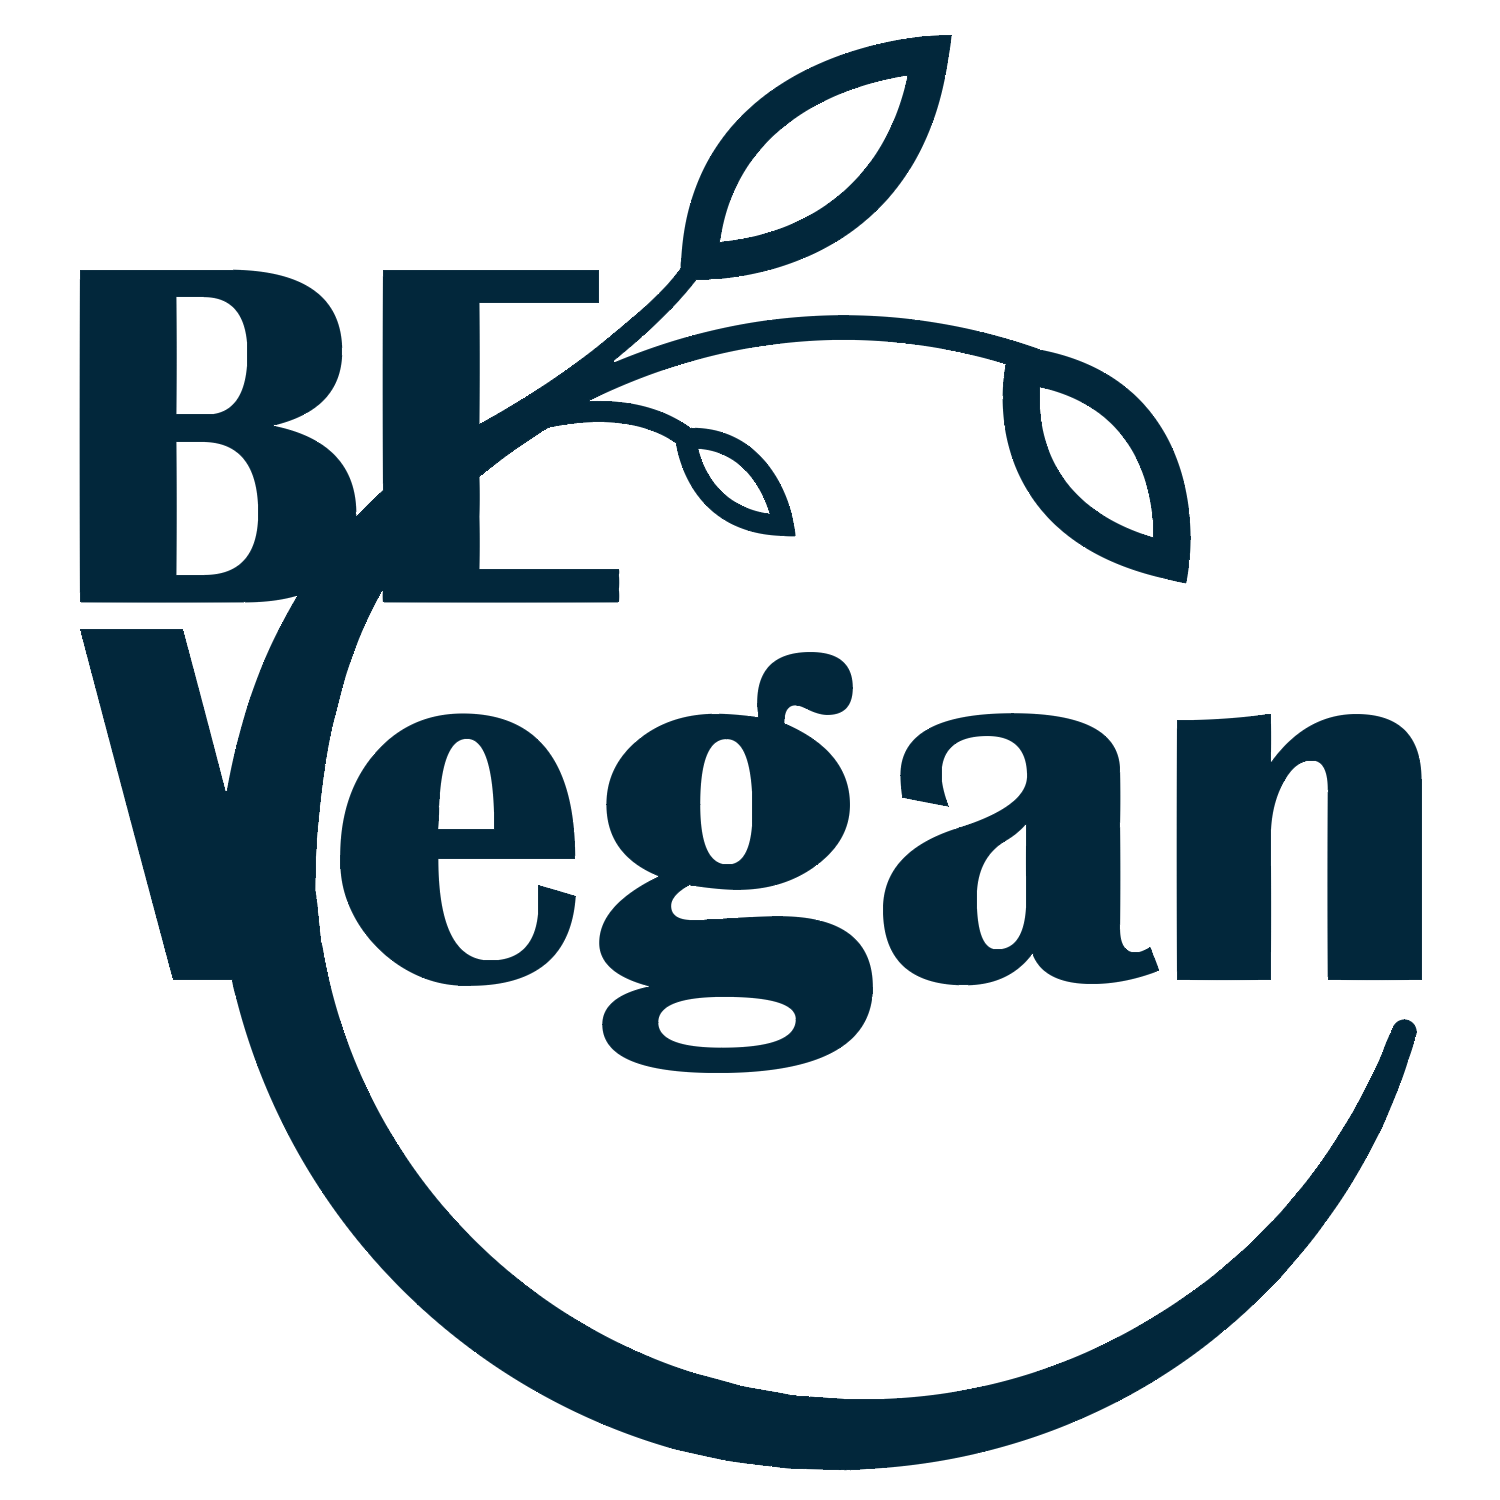 BE Vegan